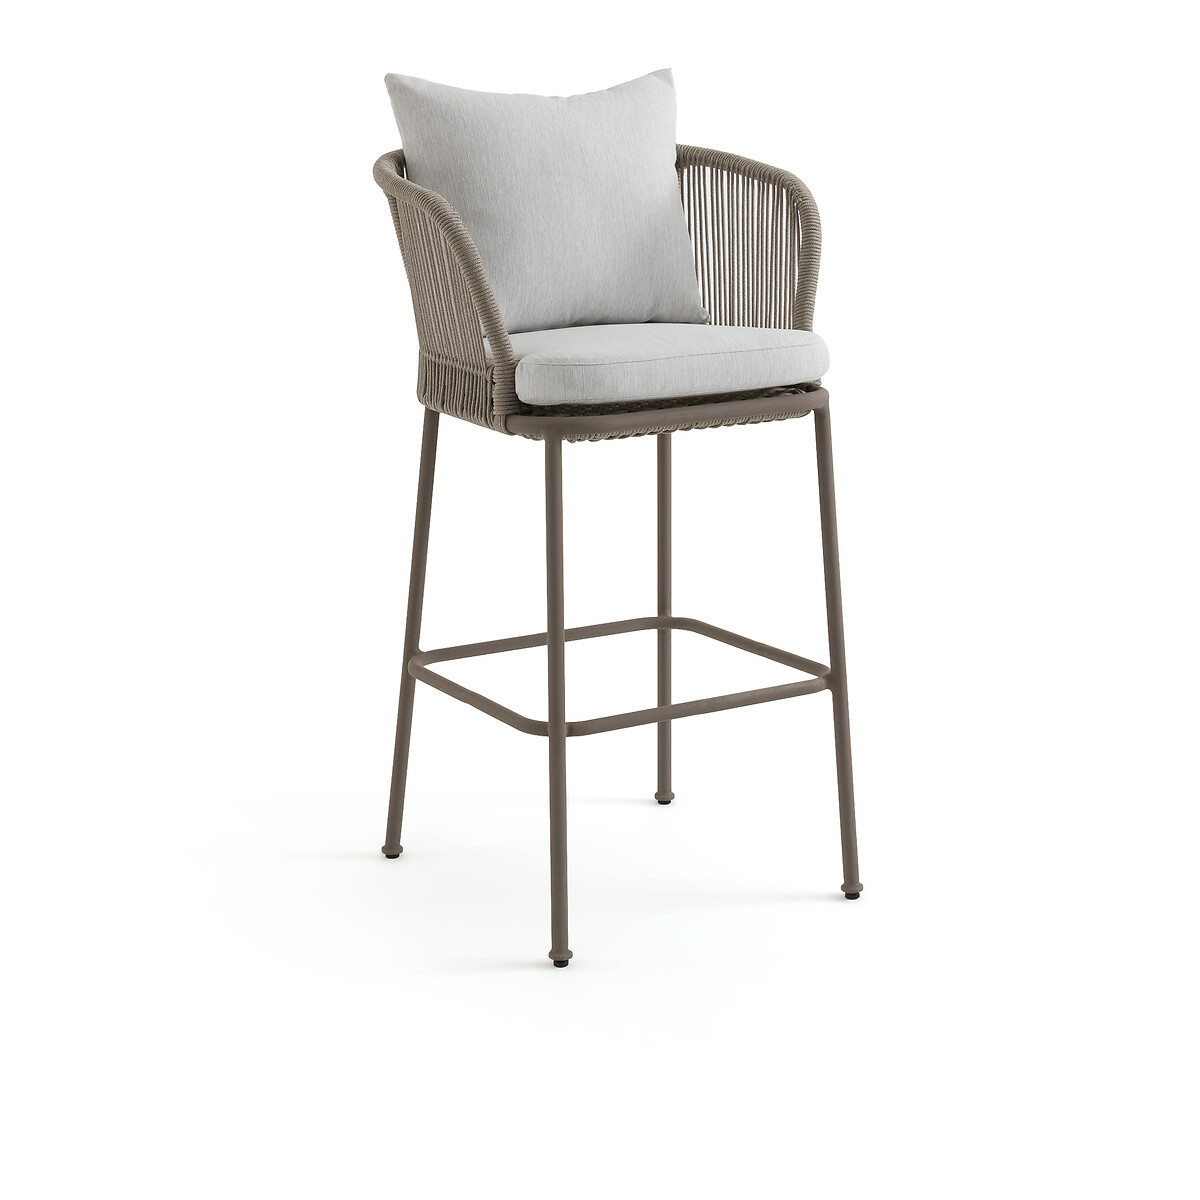 Кресло столовое для сада высокое Cabestan единый размер каштановый кресло столовое из велюровой синельной пряжи kinna единый размер каштановый